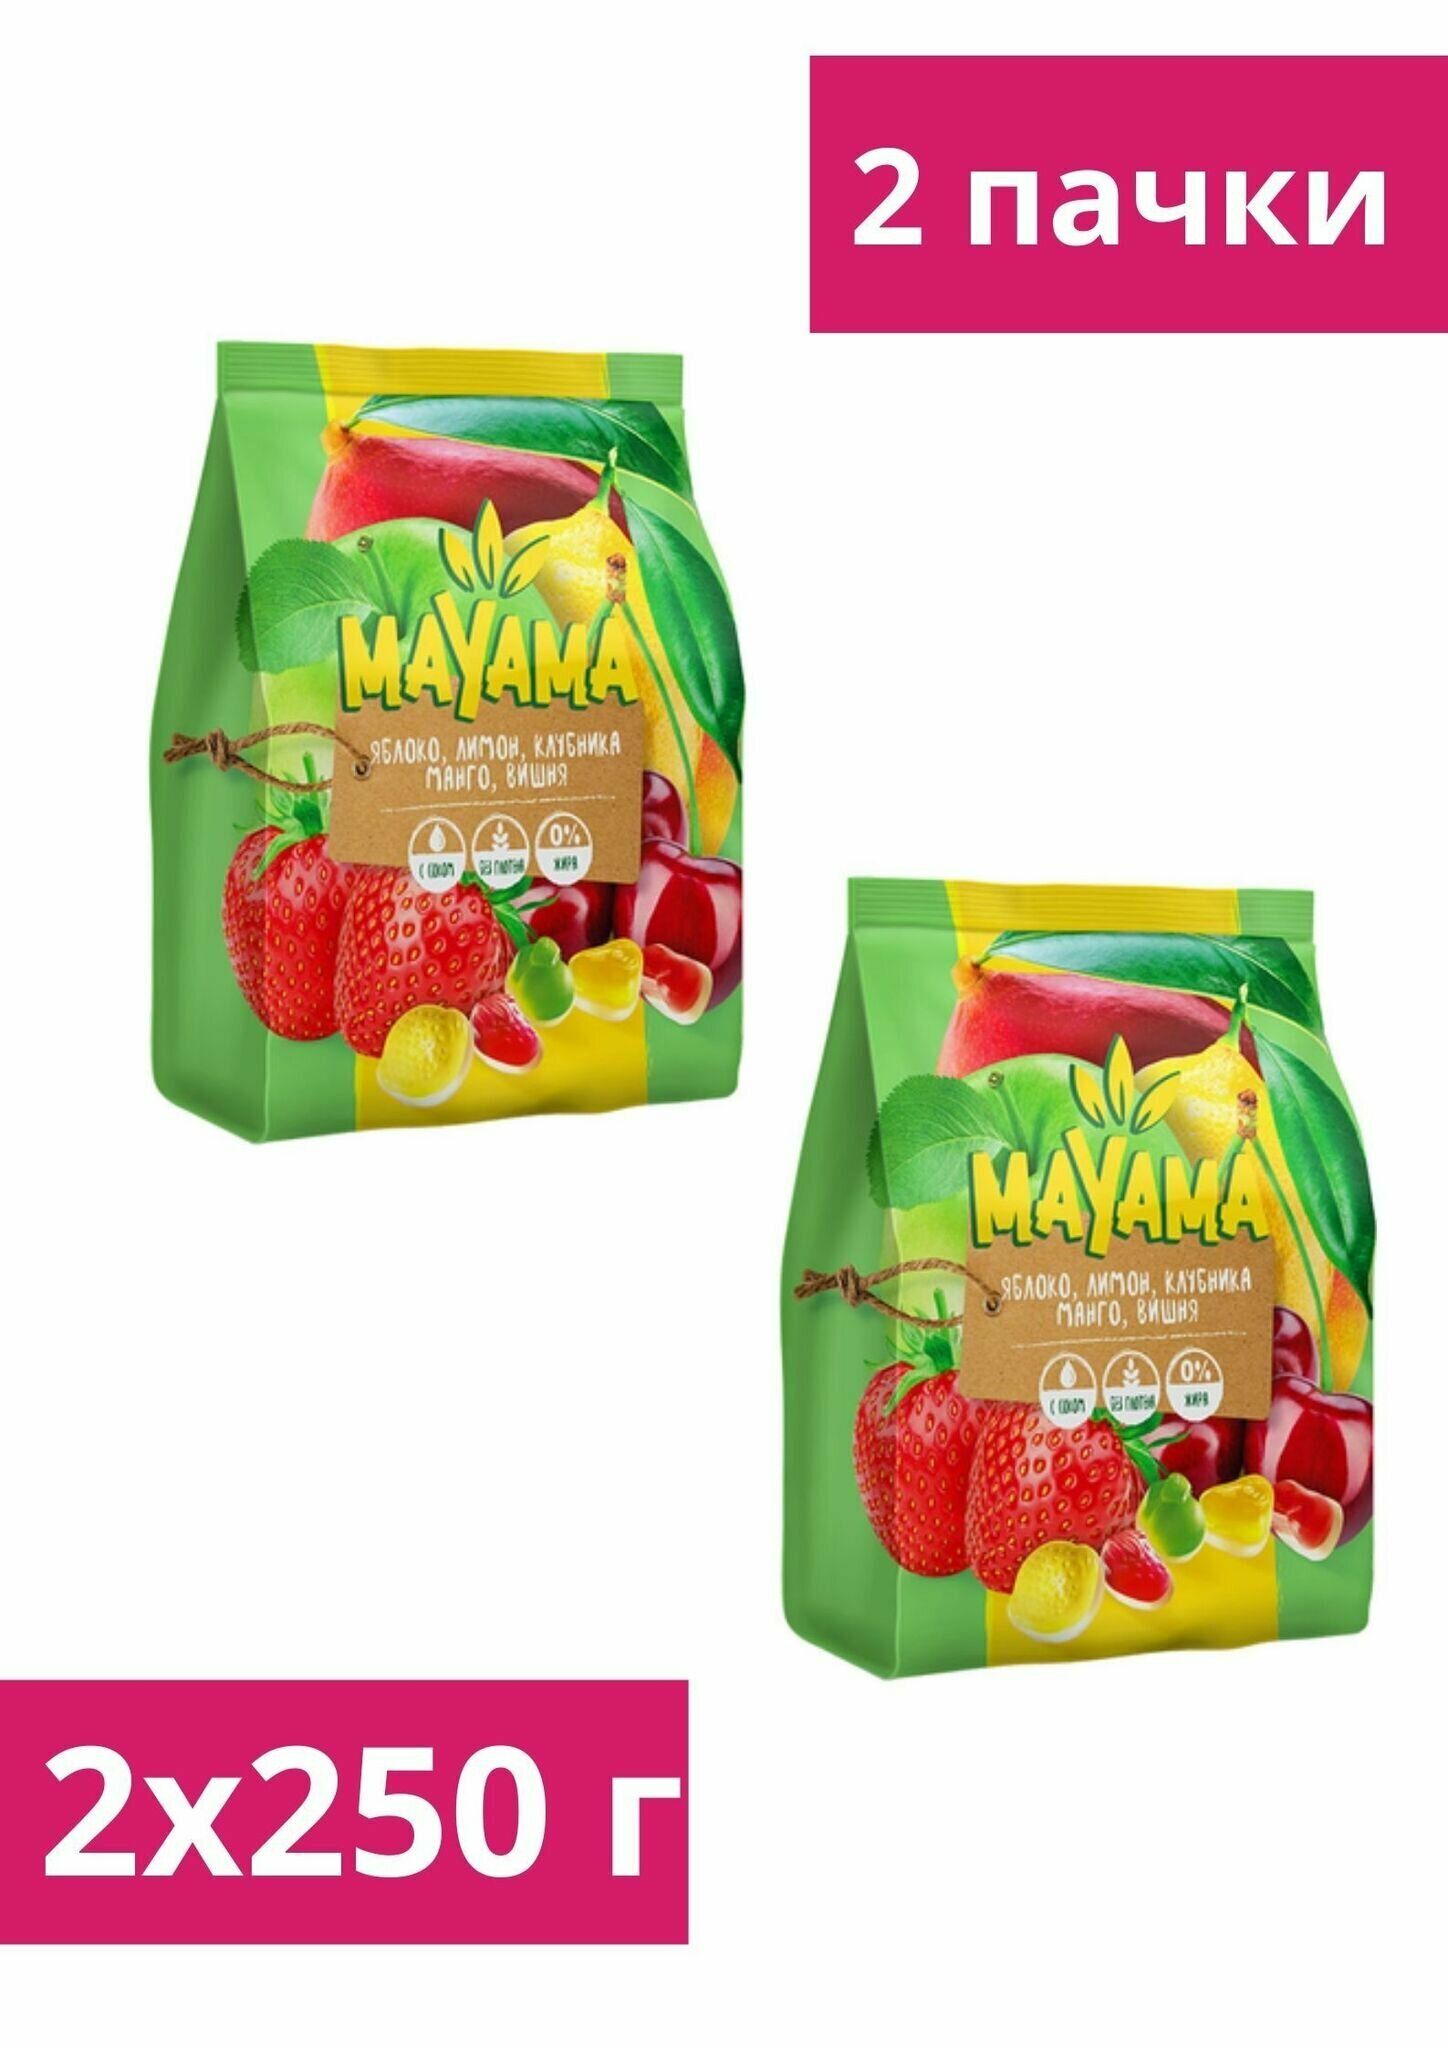 Мармелад "Маяма", мармелад жевательный с соком манго, клубники, лимона, вишни, яблок, 250 г, 2 пачки